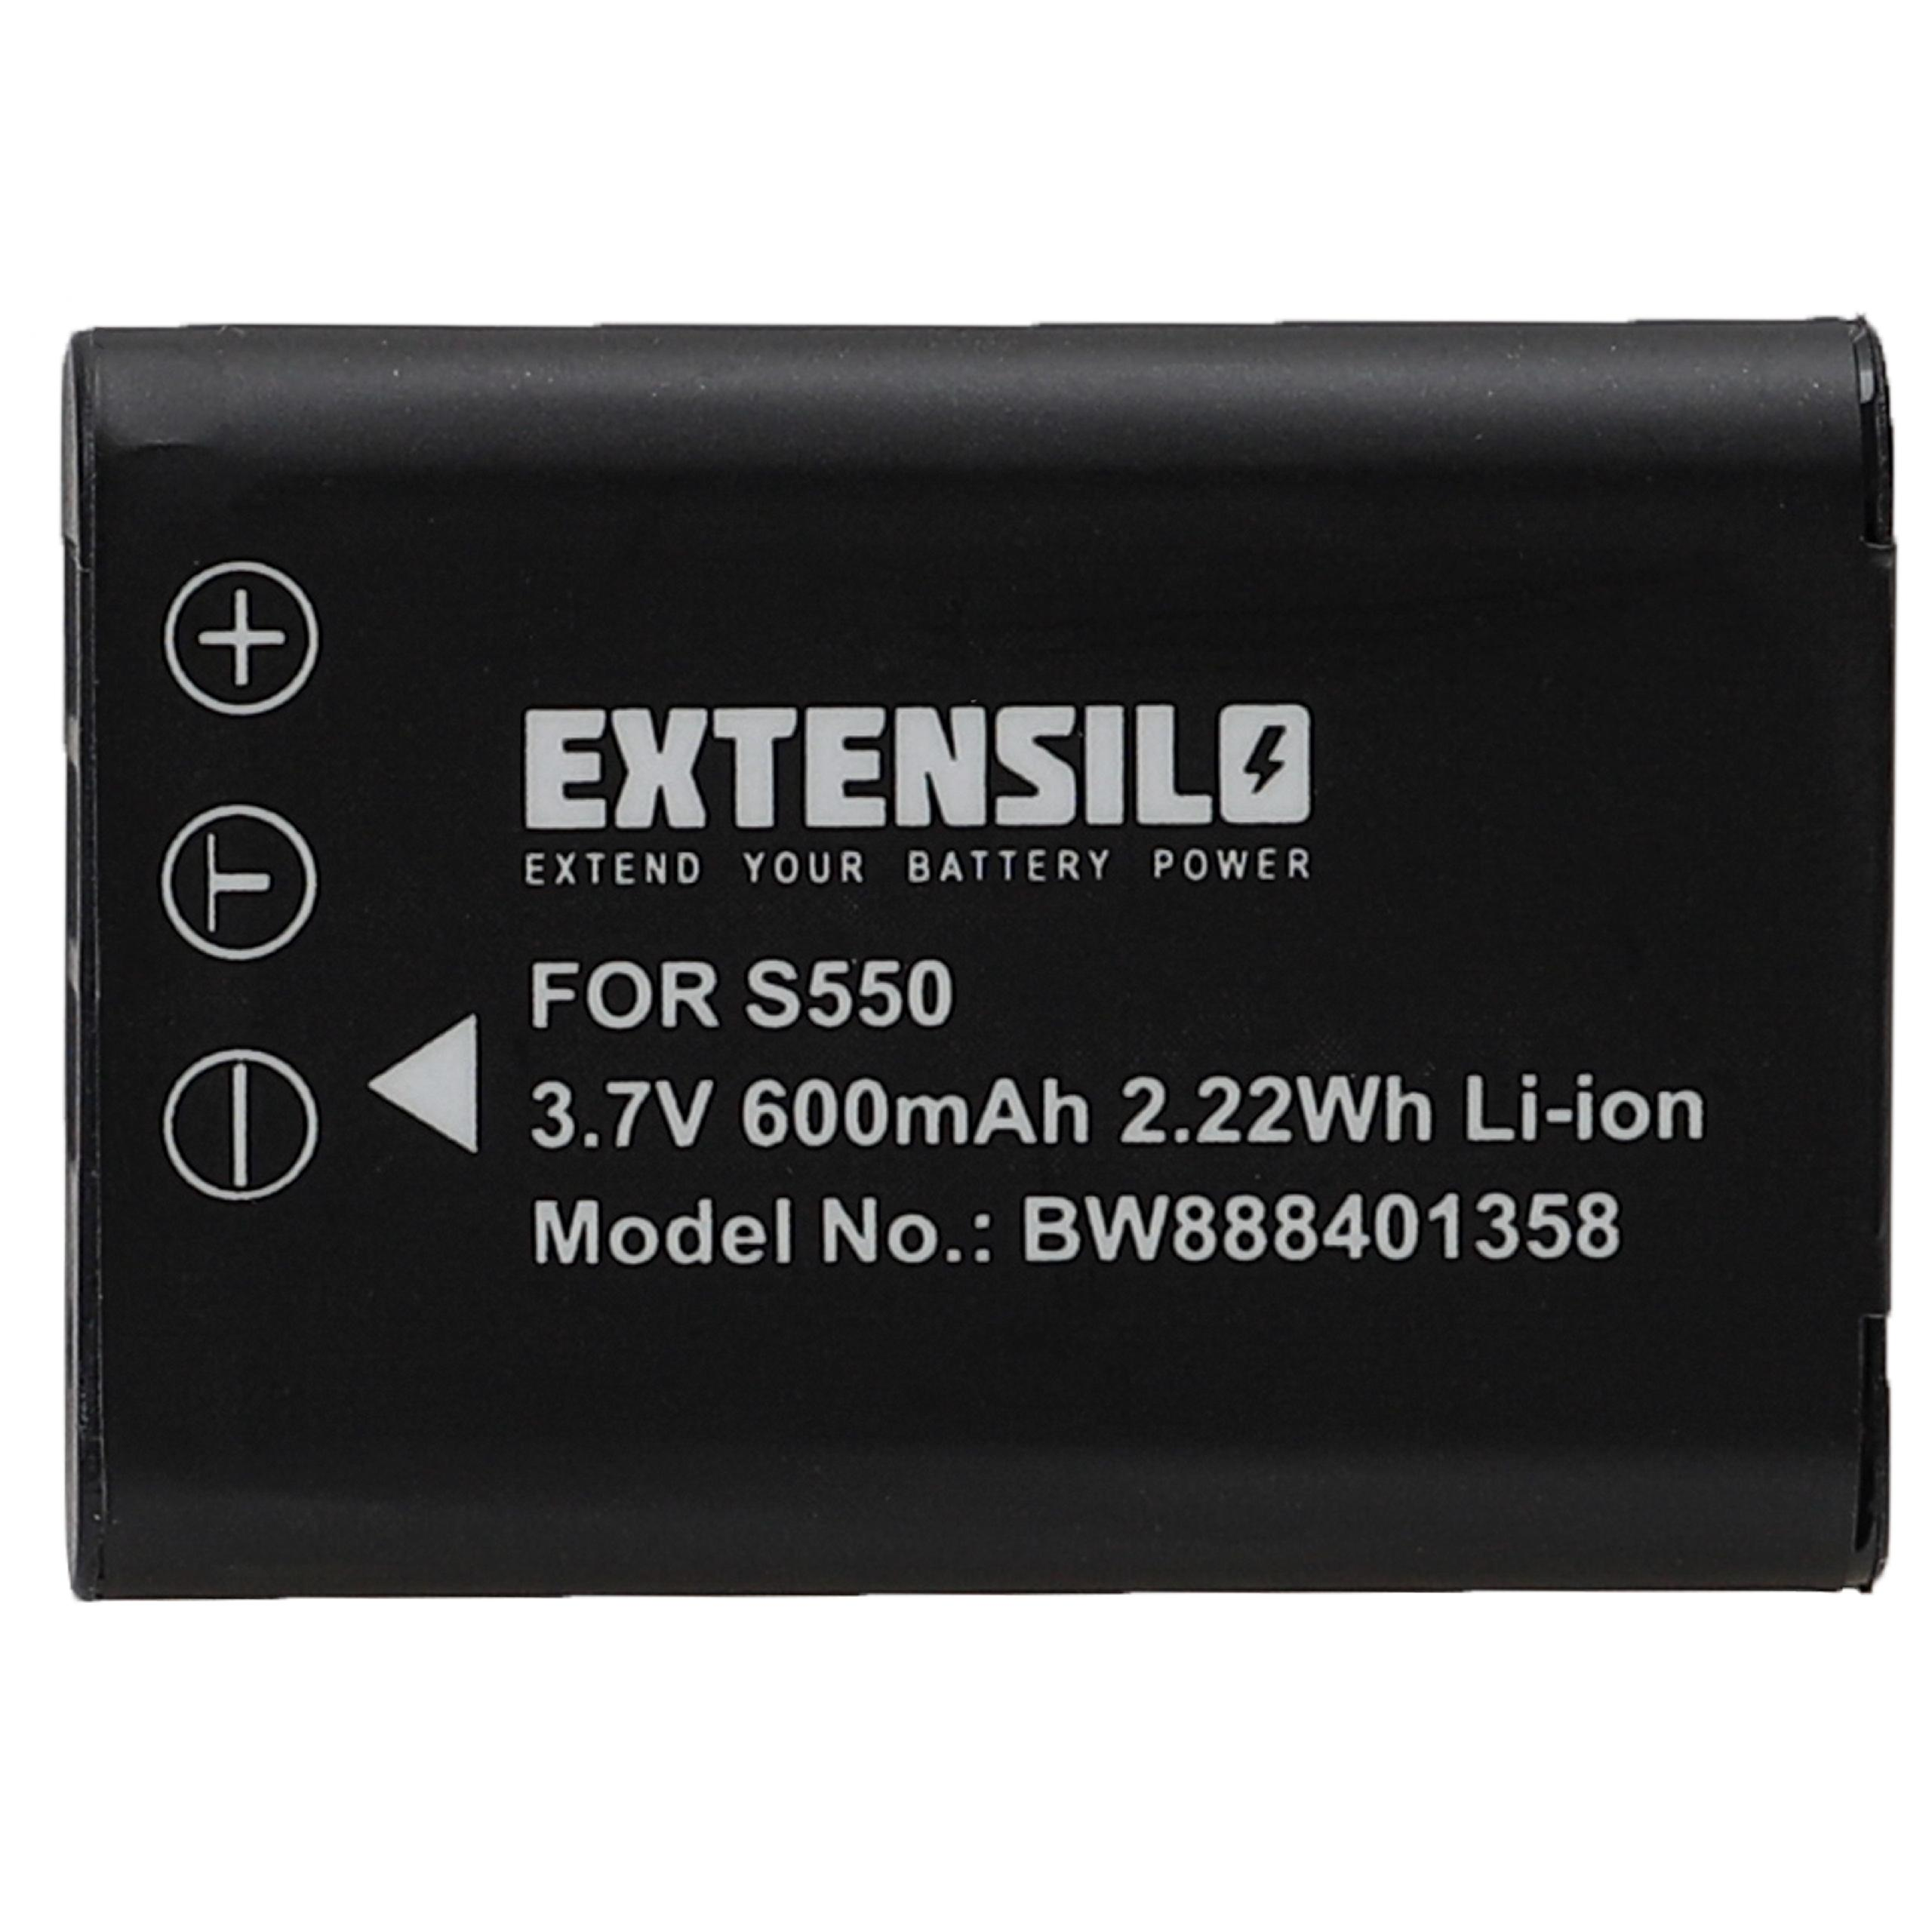 EXTENSILO kompatibel mit Akku Li-Ion Optio W60, Kamera, Pentax M60, L50, 600 3.7 - Volt, M50, V20 S1, W80